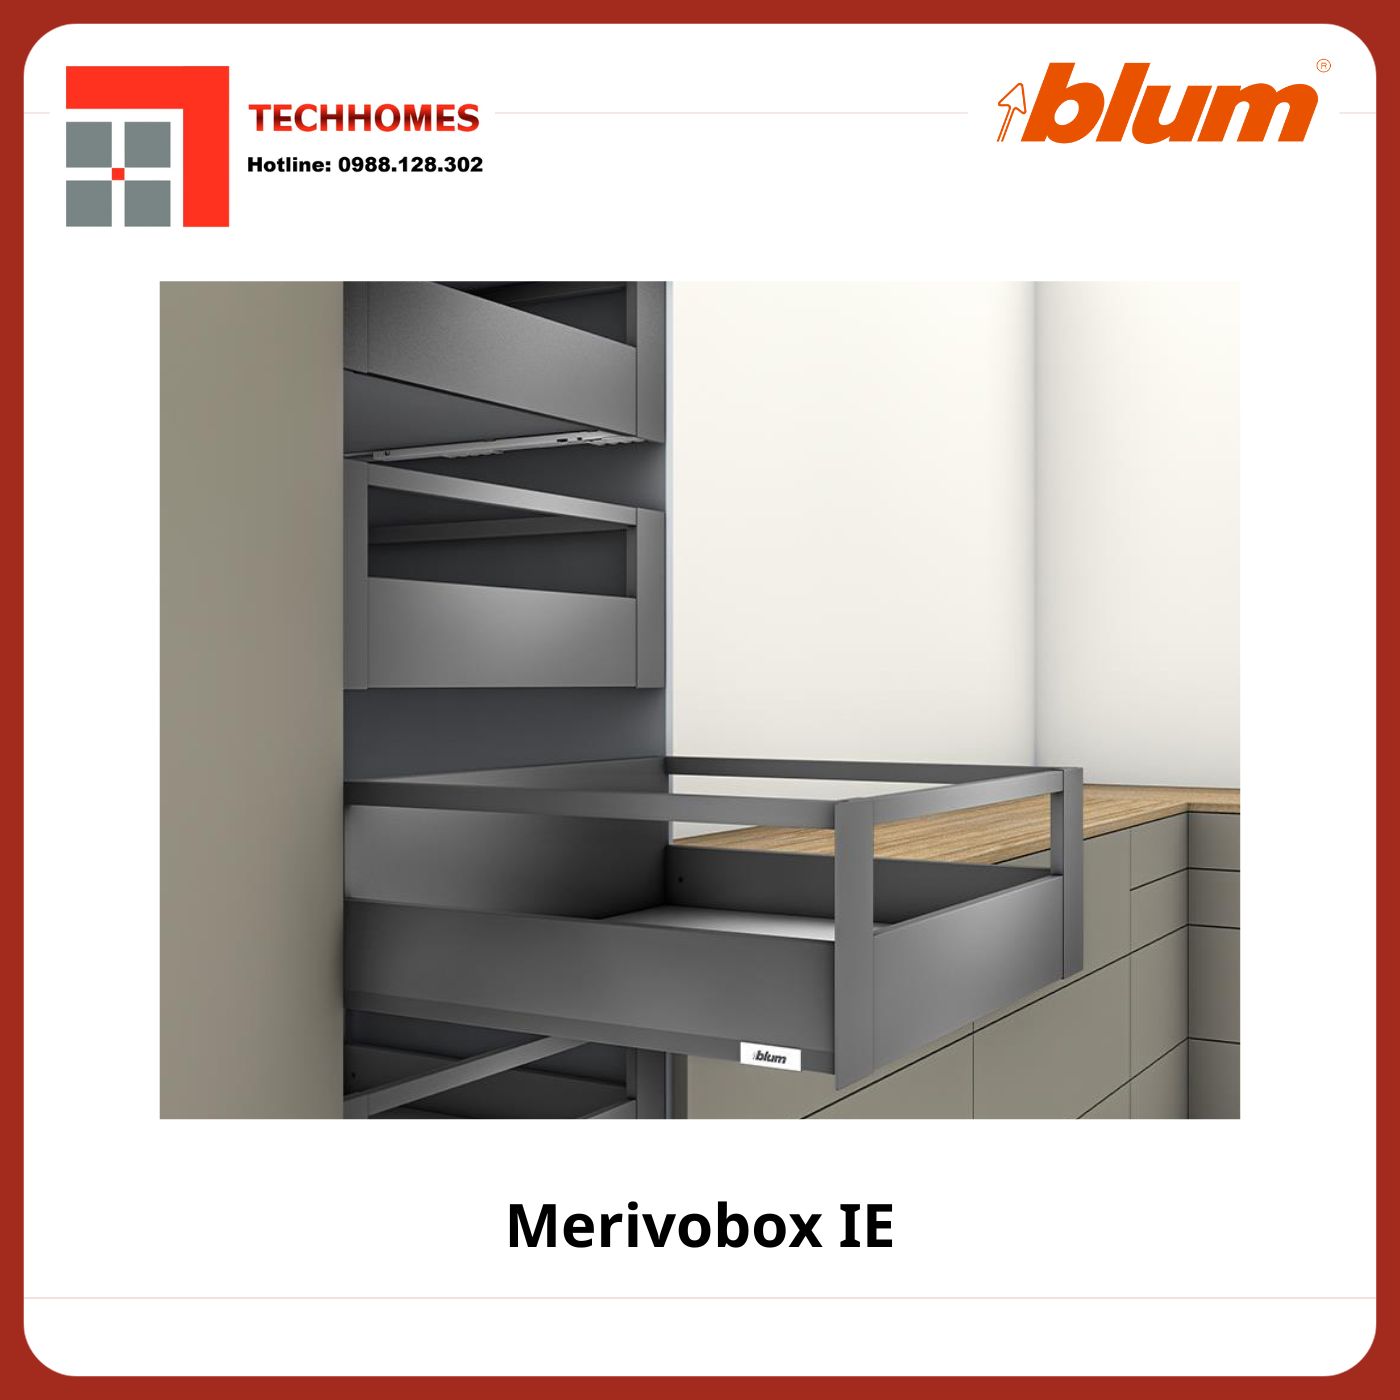 RAY HỘP ÂM BLUM MERIVOBOX E - Merivobox IE